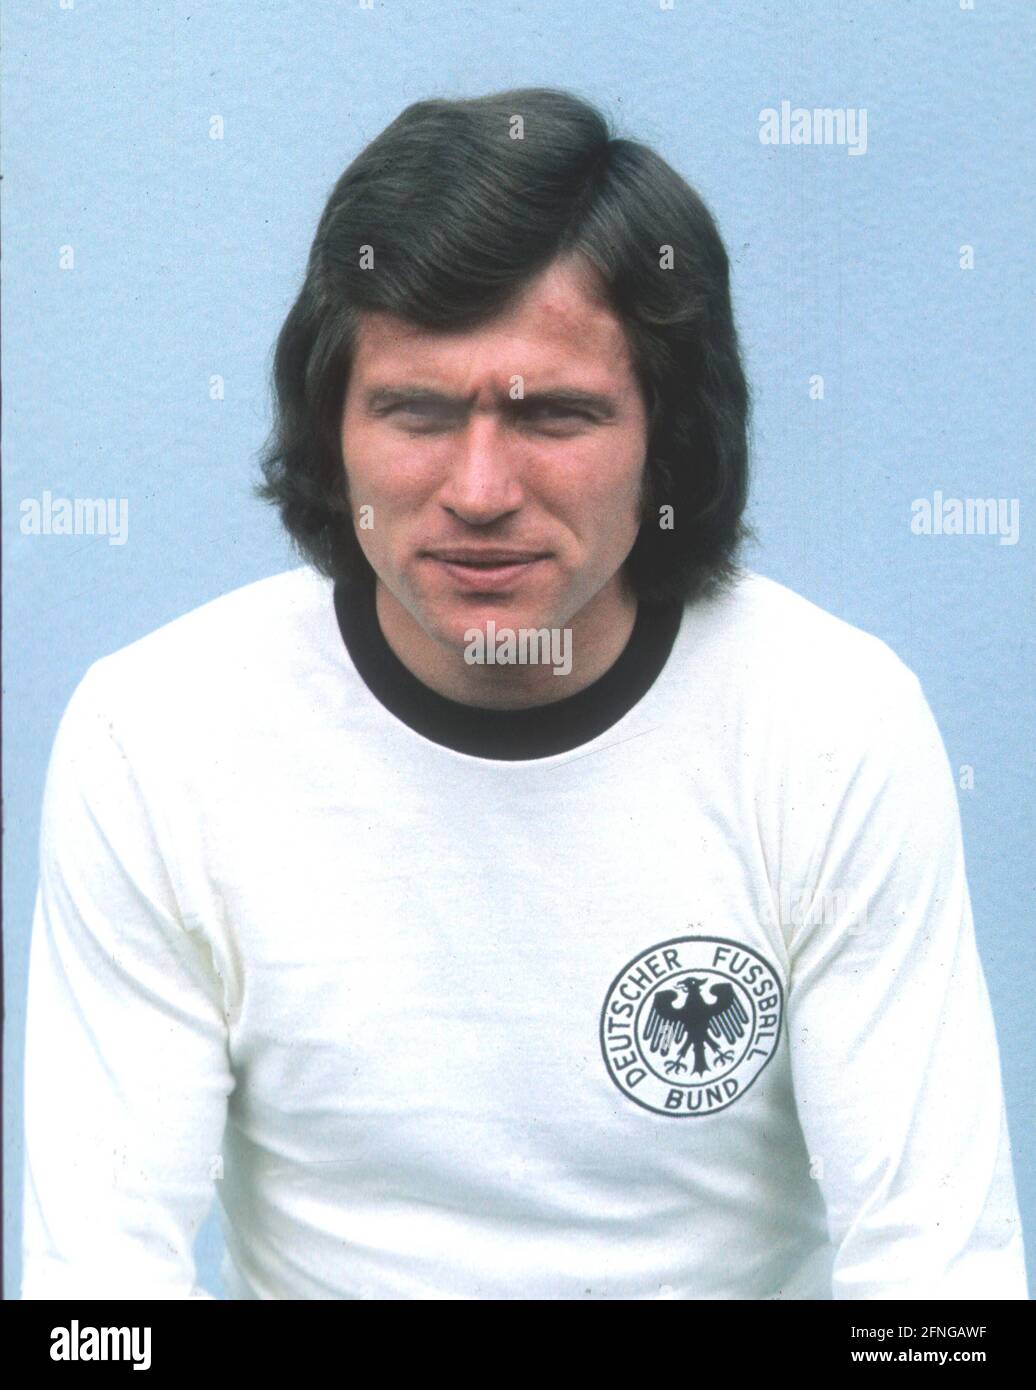 '01.06.1974 (Datum geschätzt) Nationalspieler bei der WM 1974: Josef ''Jupp'' Heynckes [automatisierte Übersetzung]' Stockfoto